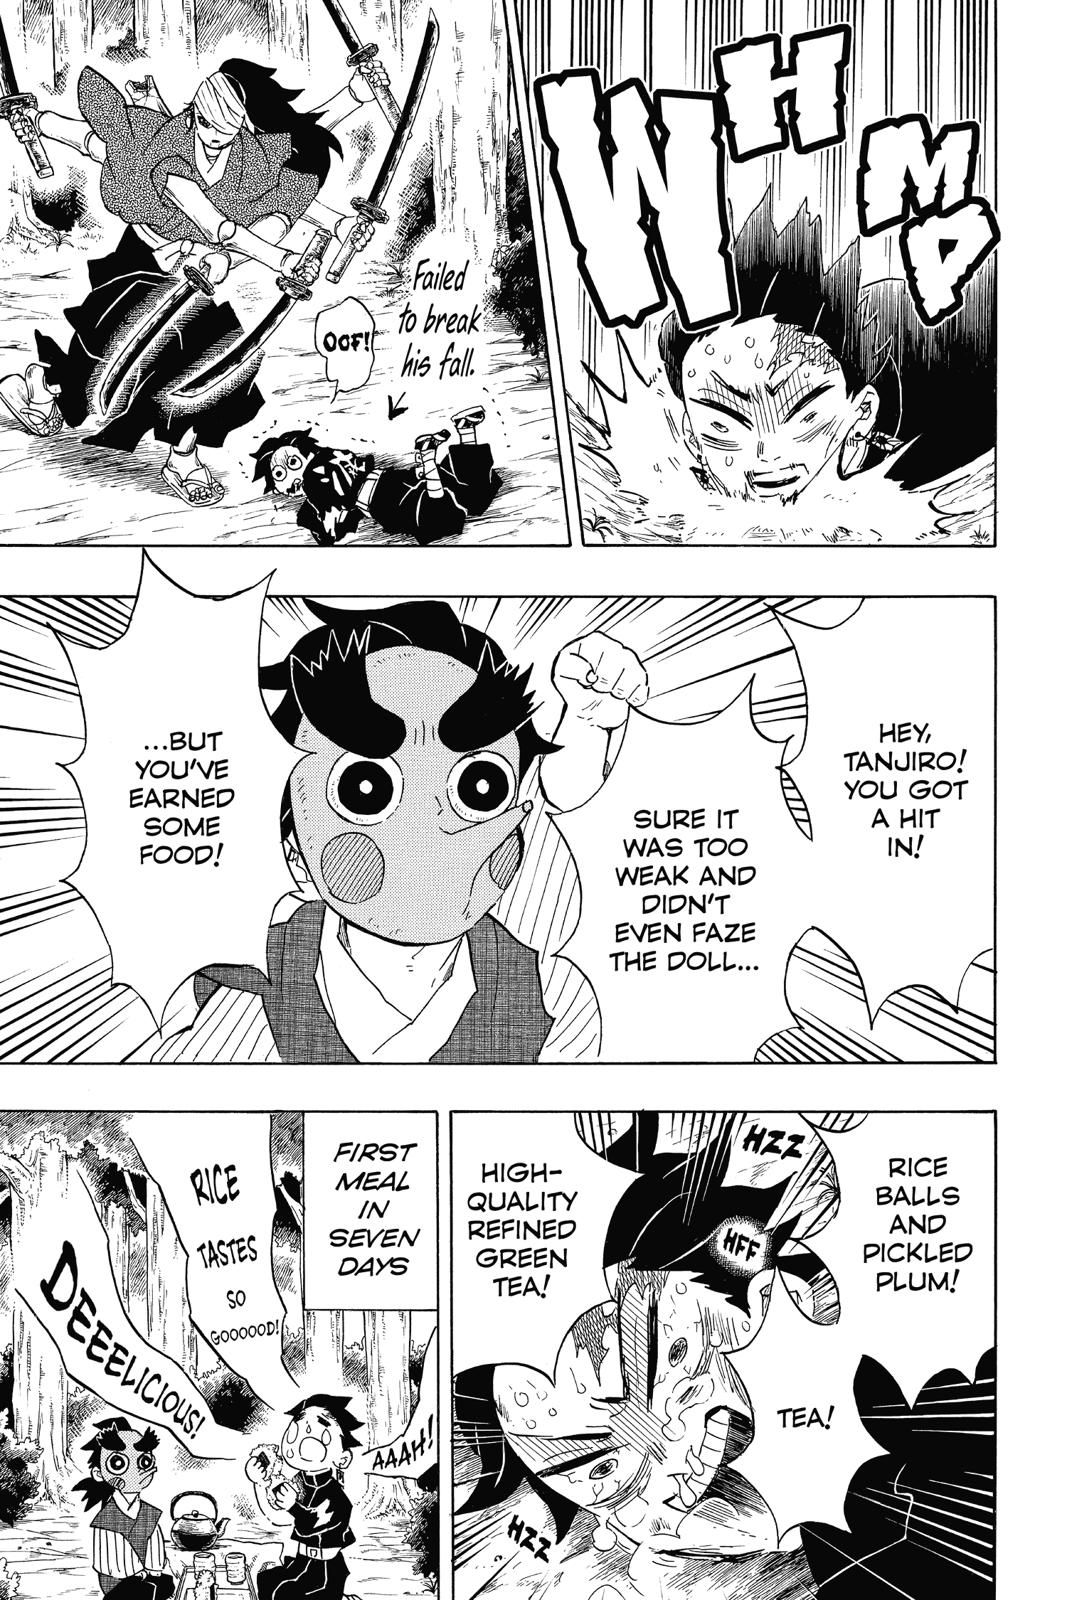 Demon Slayer Manga Manga Chapter - 104 - image 10